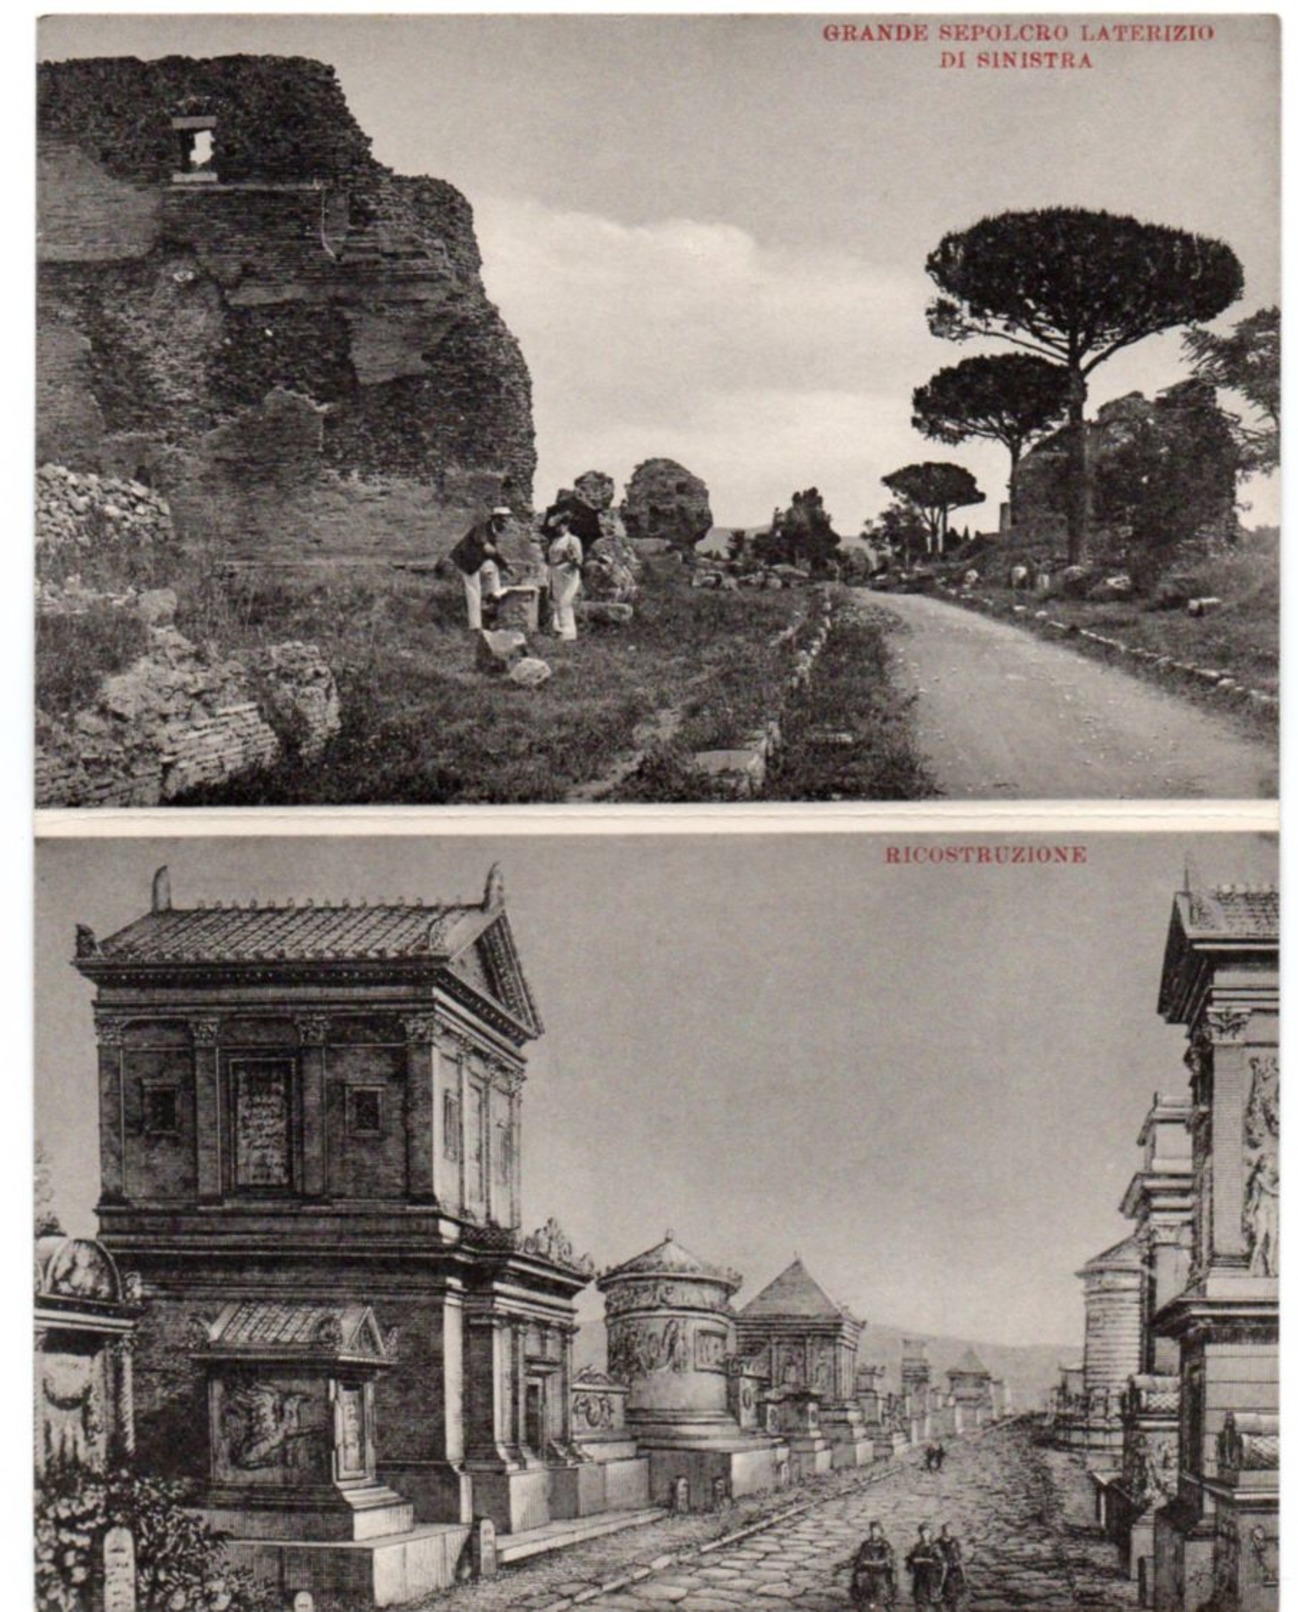 Histoire Archeologie Architecture - LA VIA APPIA - Pochette Collection complète doubles cartes n° I à XX - scans